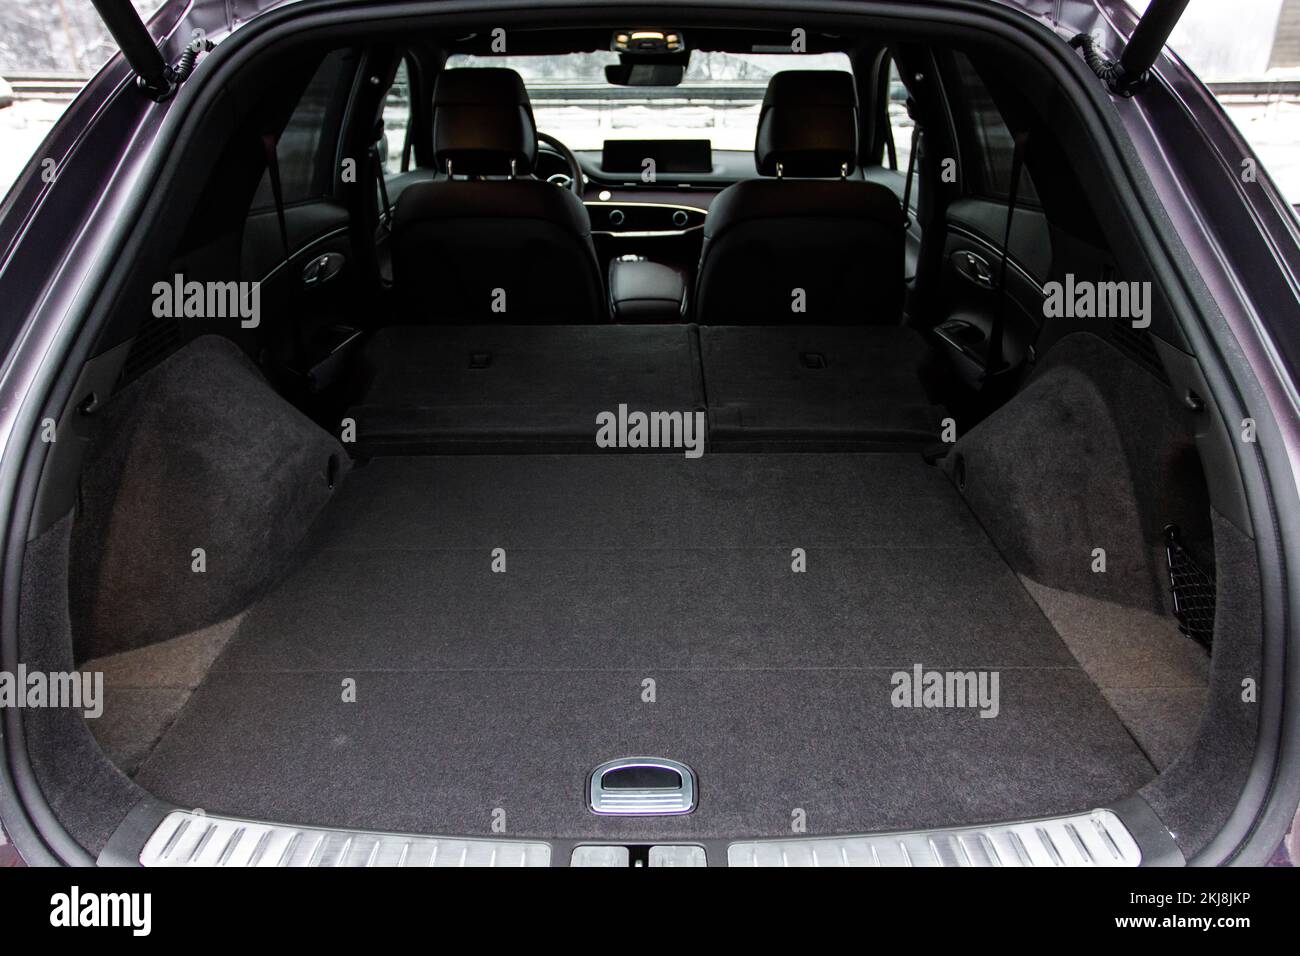 Riesiger, sauberer und leerer Kofferraum im Innenraum eines kompakten suv. Rückansicht eines SUV-Fahrzeugs mit offenem Kofferraum Stockfoto